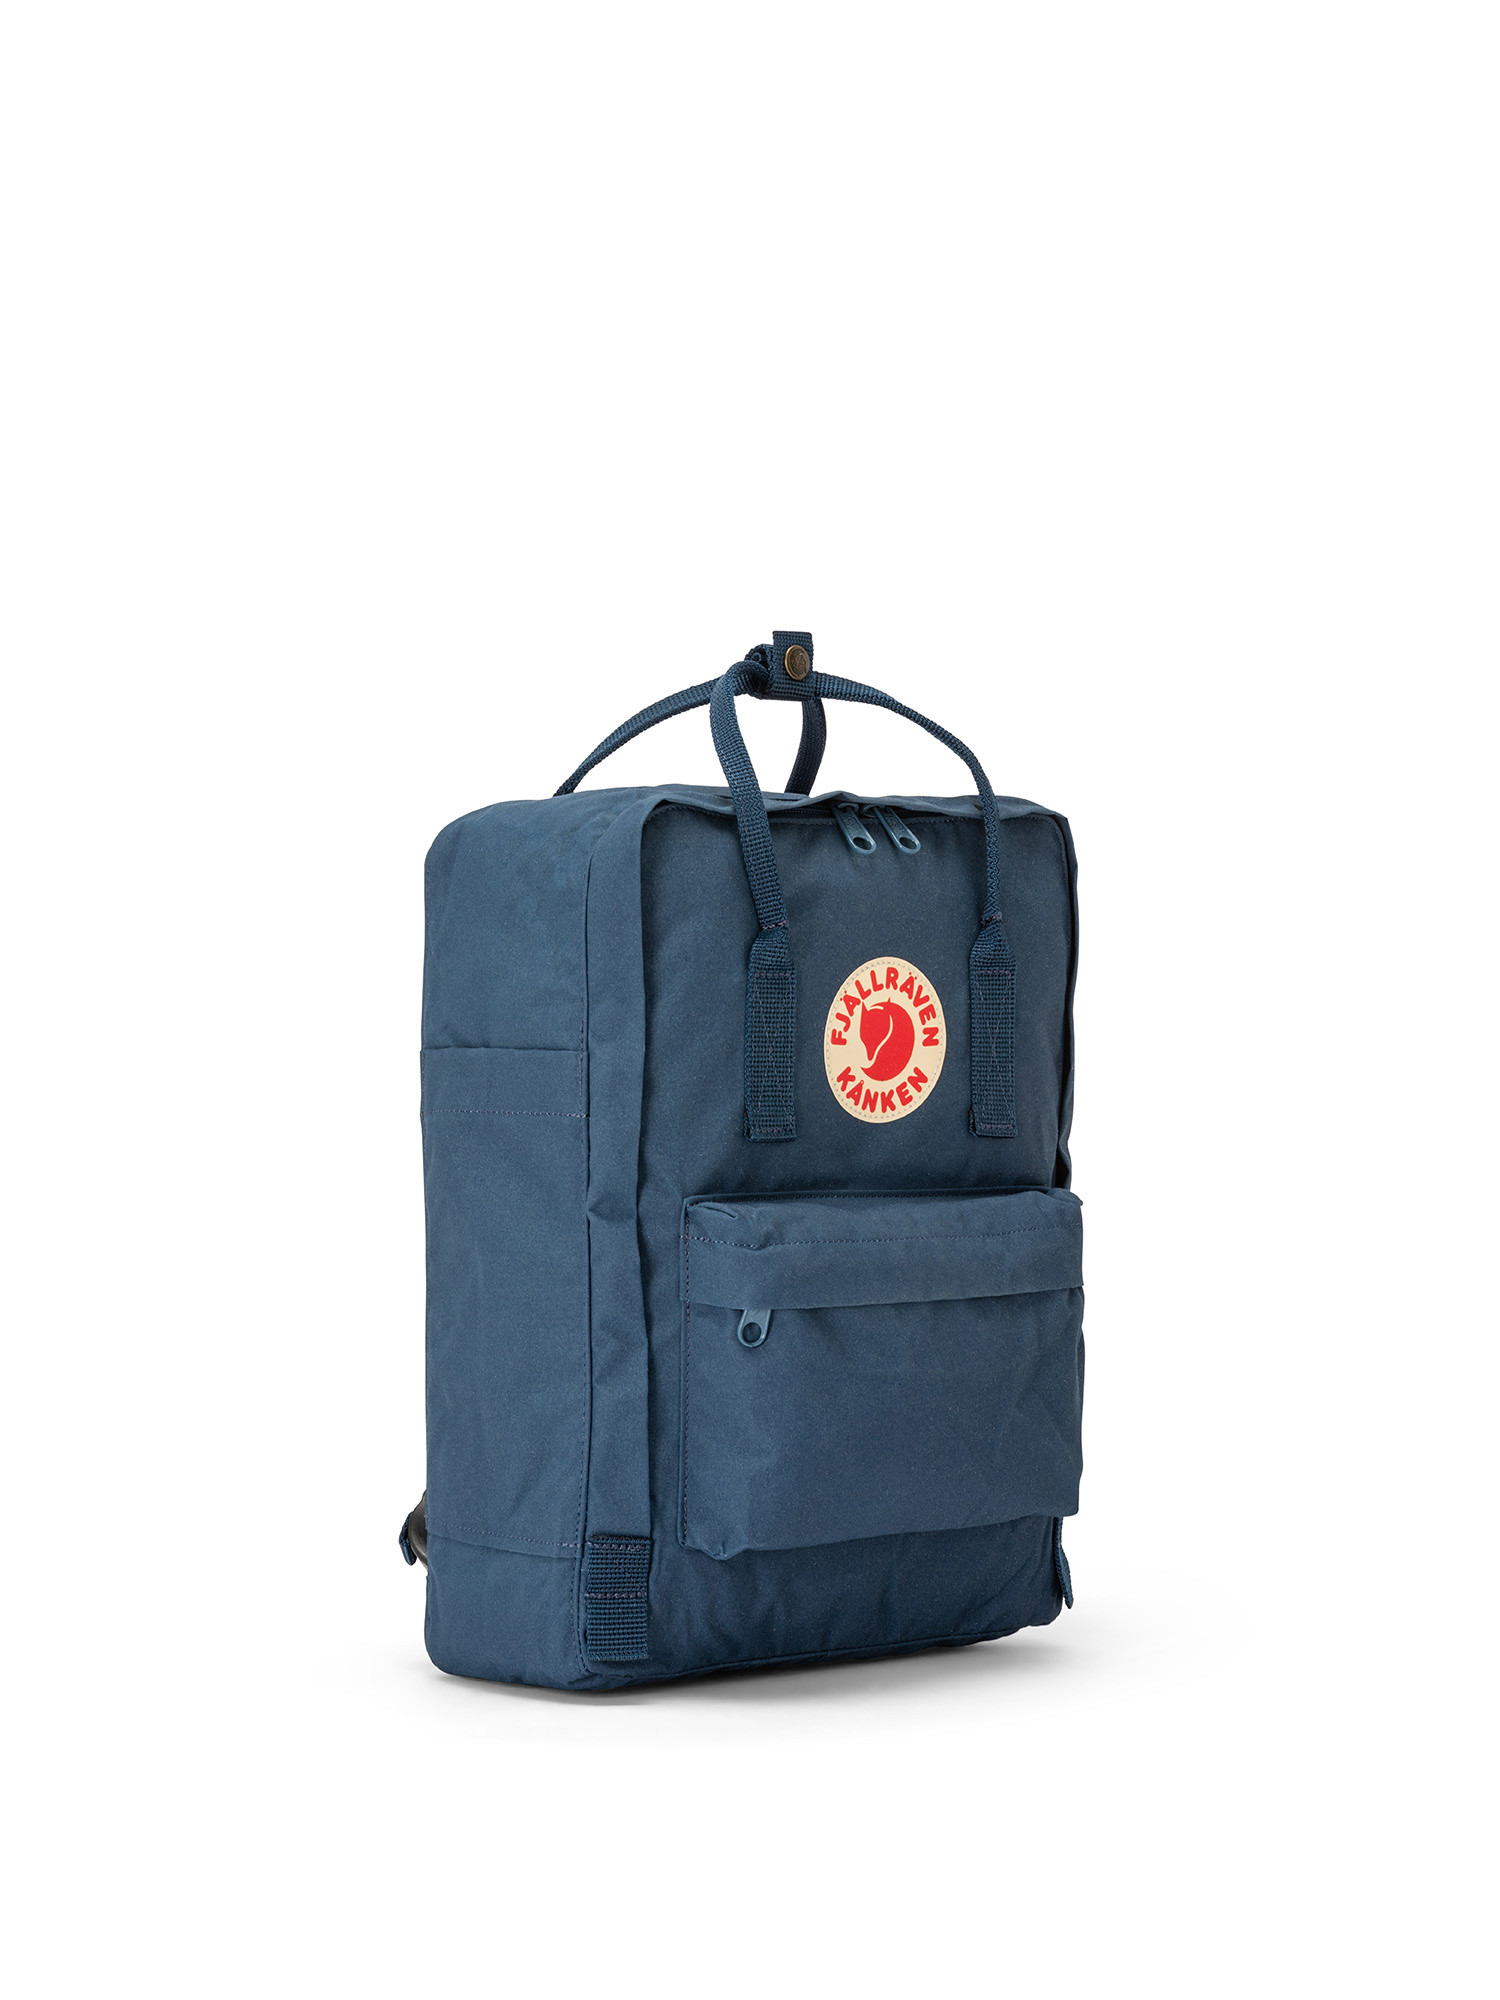 Backpack with adjustable shoulder straps, Blue, large image number 1